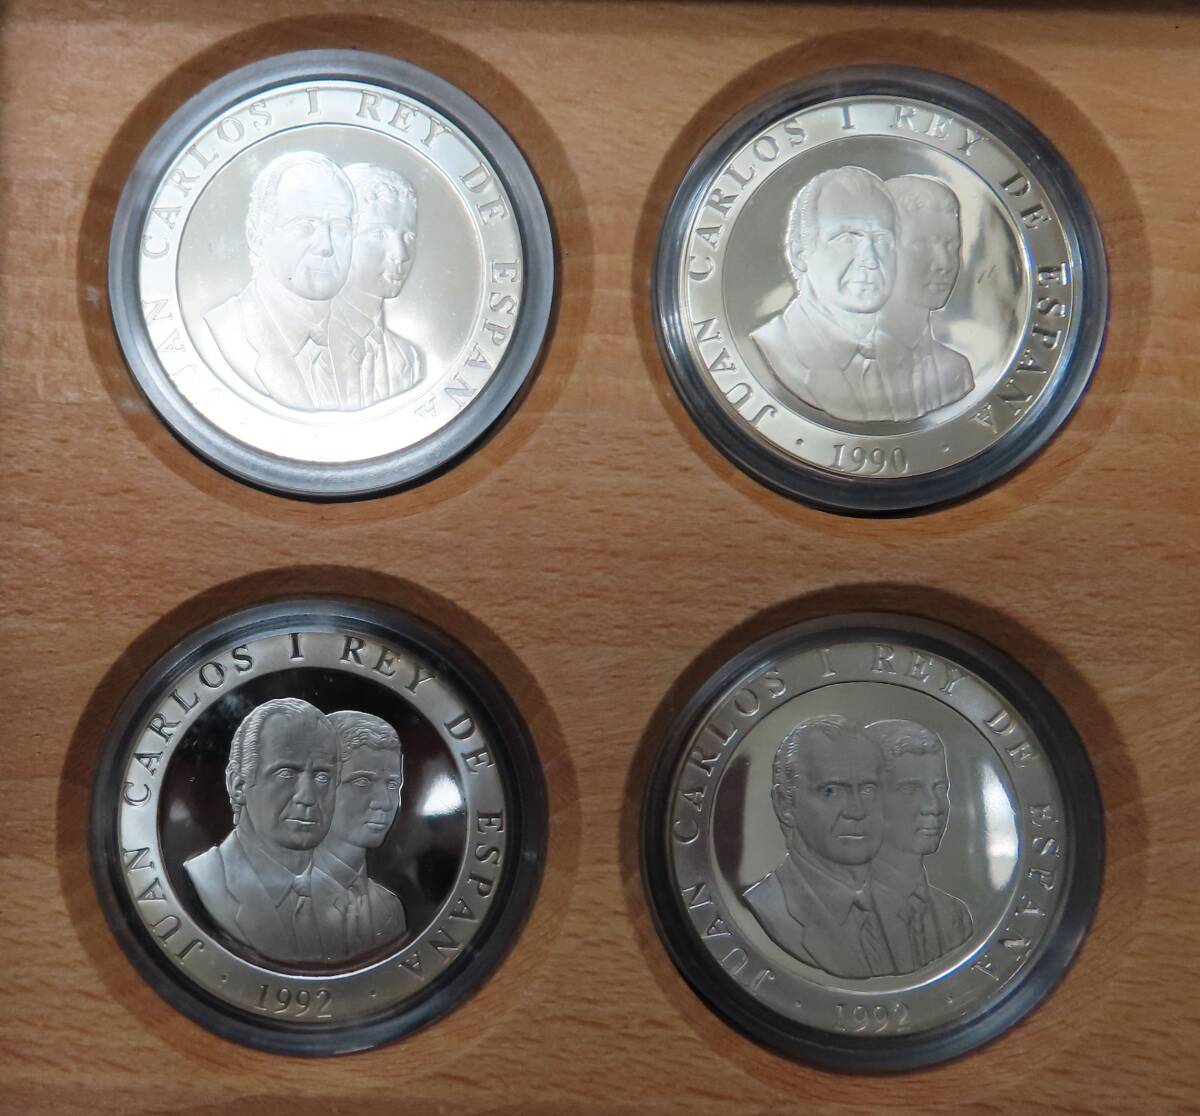 #76185 バルセロナ オリンピック 開催記念 1992 スペイン 2000ペセタ プルーフ銀貨 4種セット コインの画像3